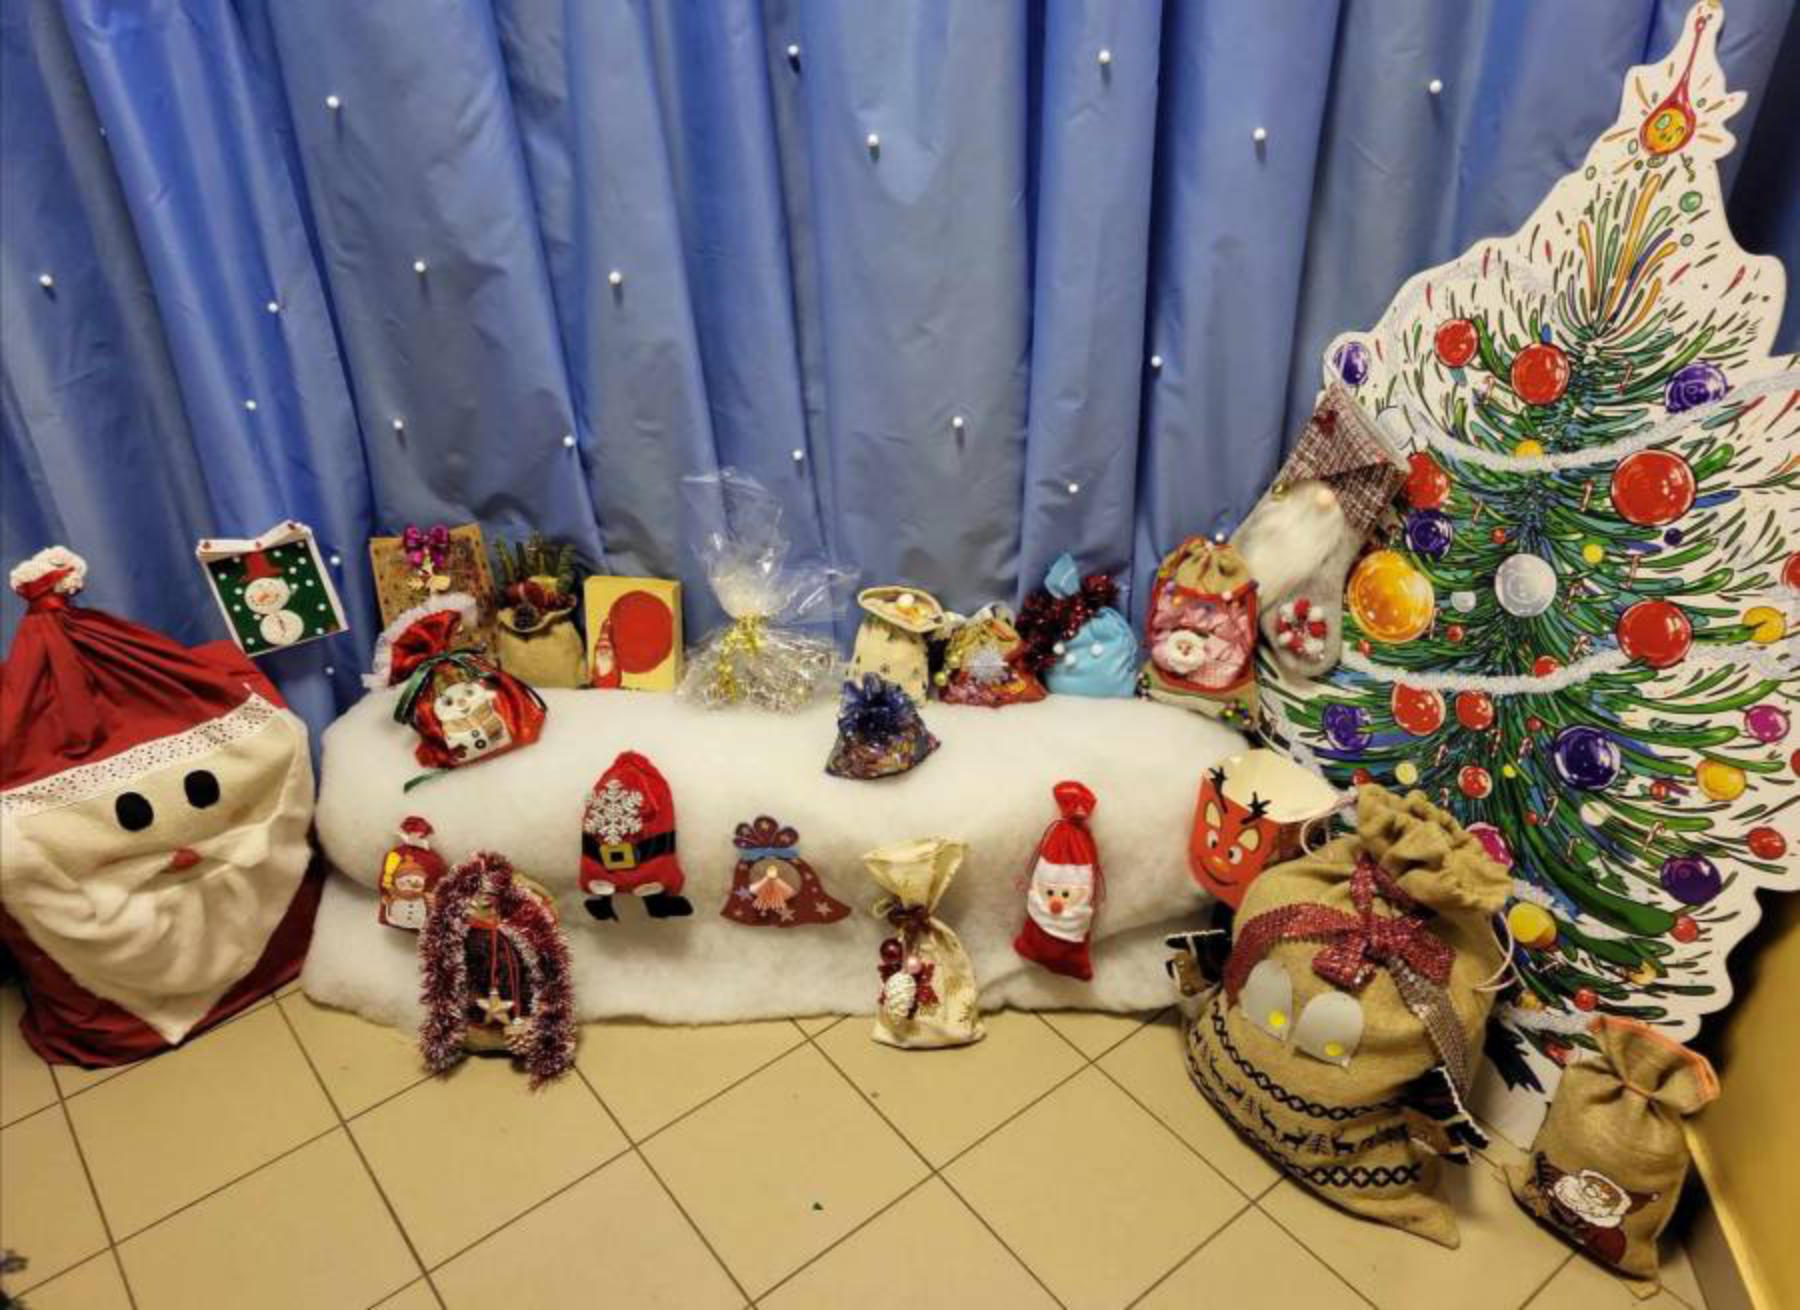 Ozdobione woreczki stały się pięknym dodatkiem do dekoracji świątecznych i stworzyły wyjątkową atmosferę.